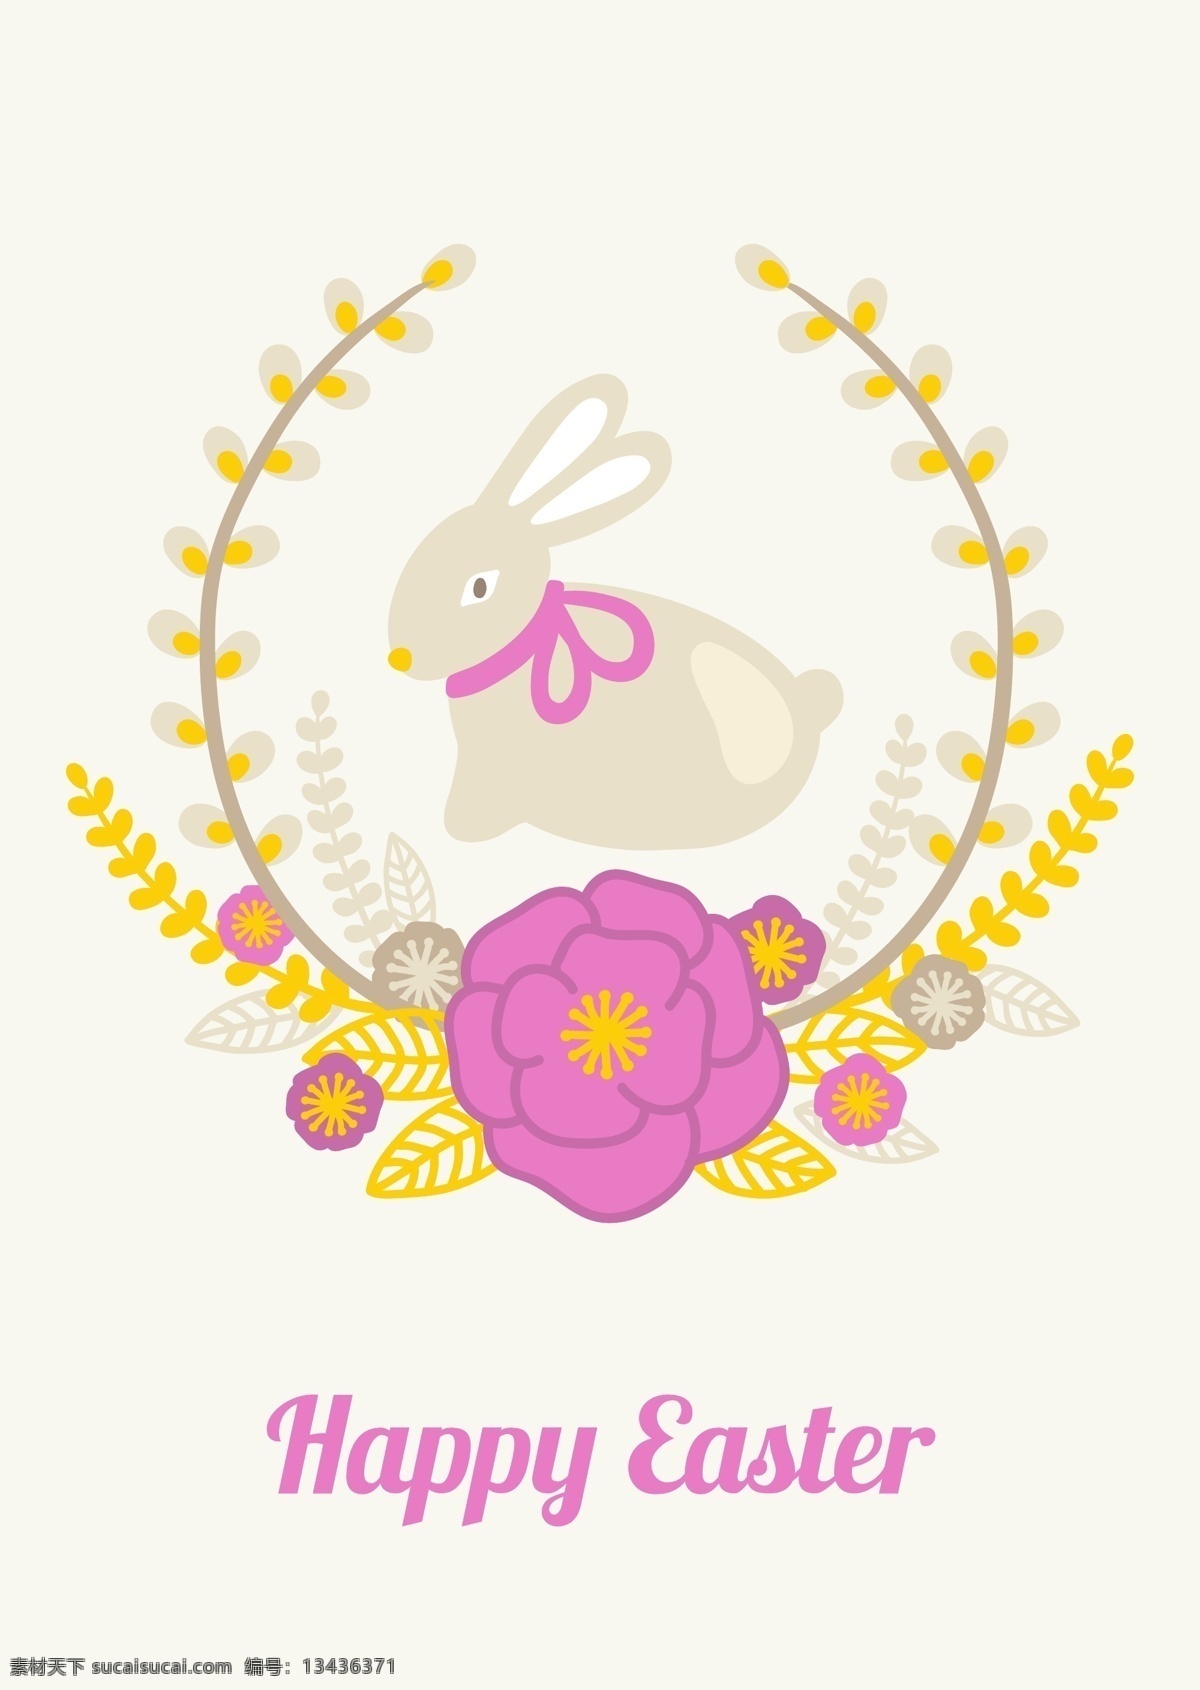 复活节 矢量 卡通 兔子 花朵 黄色 粉色 花边 矢量素材 设计素材